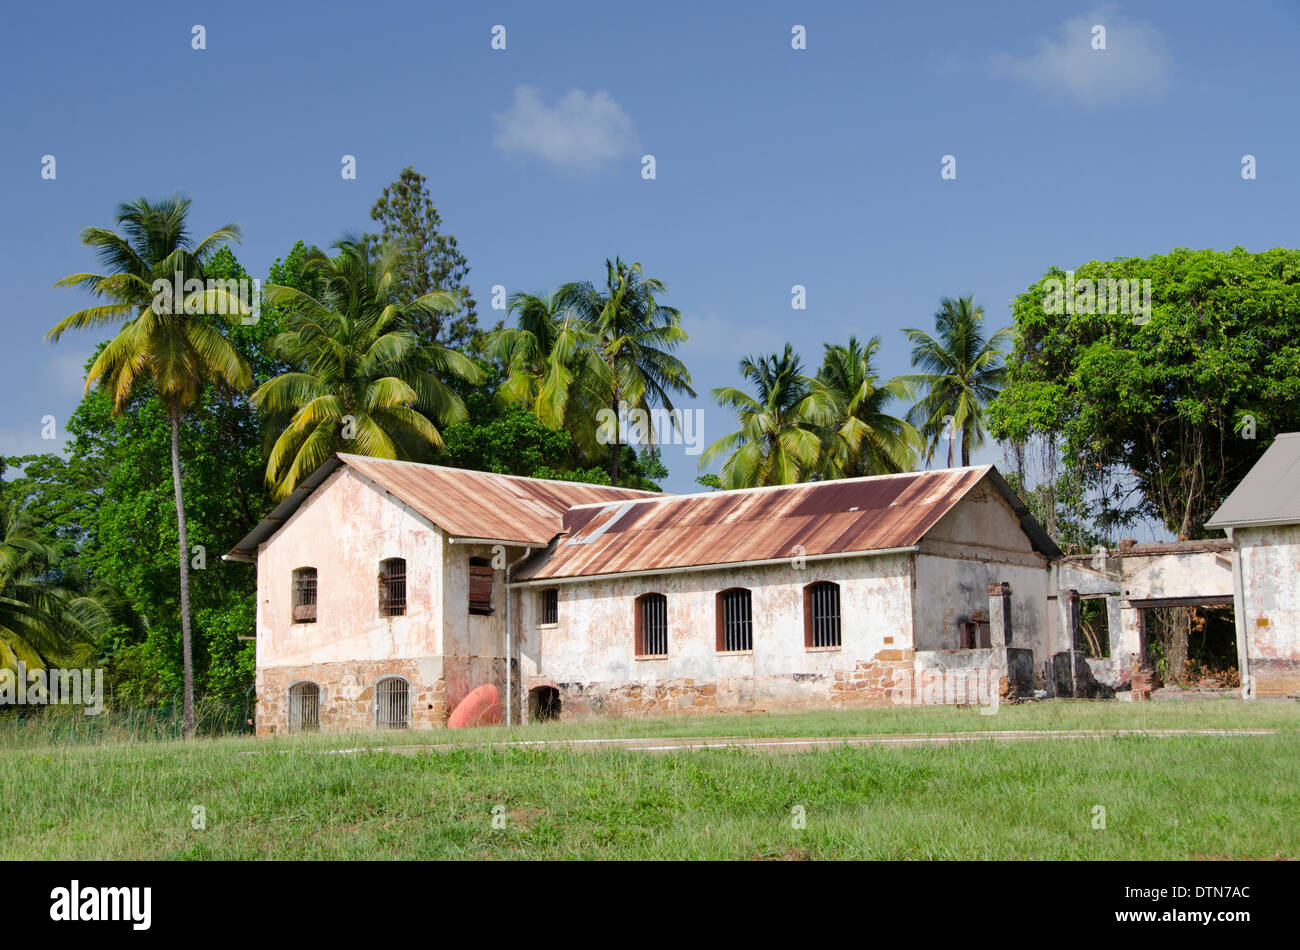 Guyane, Iles du salut. L'île Royale, vieux bâtiments autrefois partie de l'infâme colonie pénitentiaire. Banque D'Images